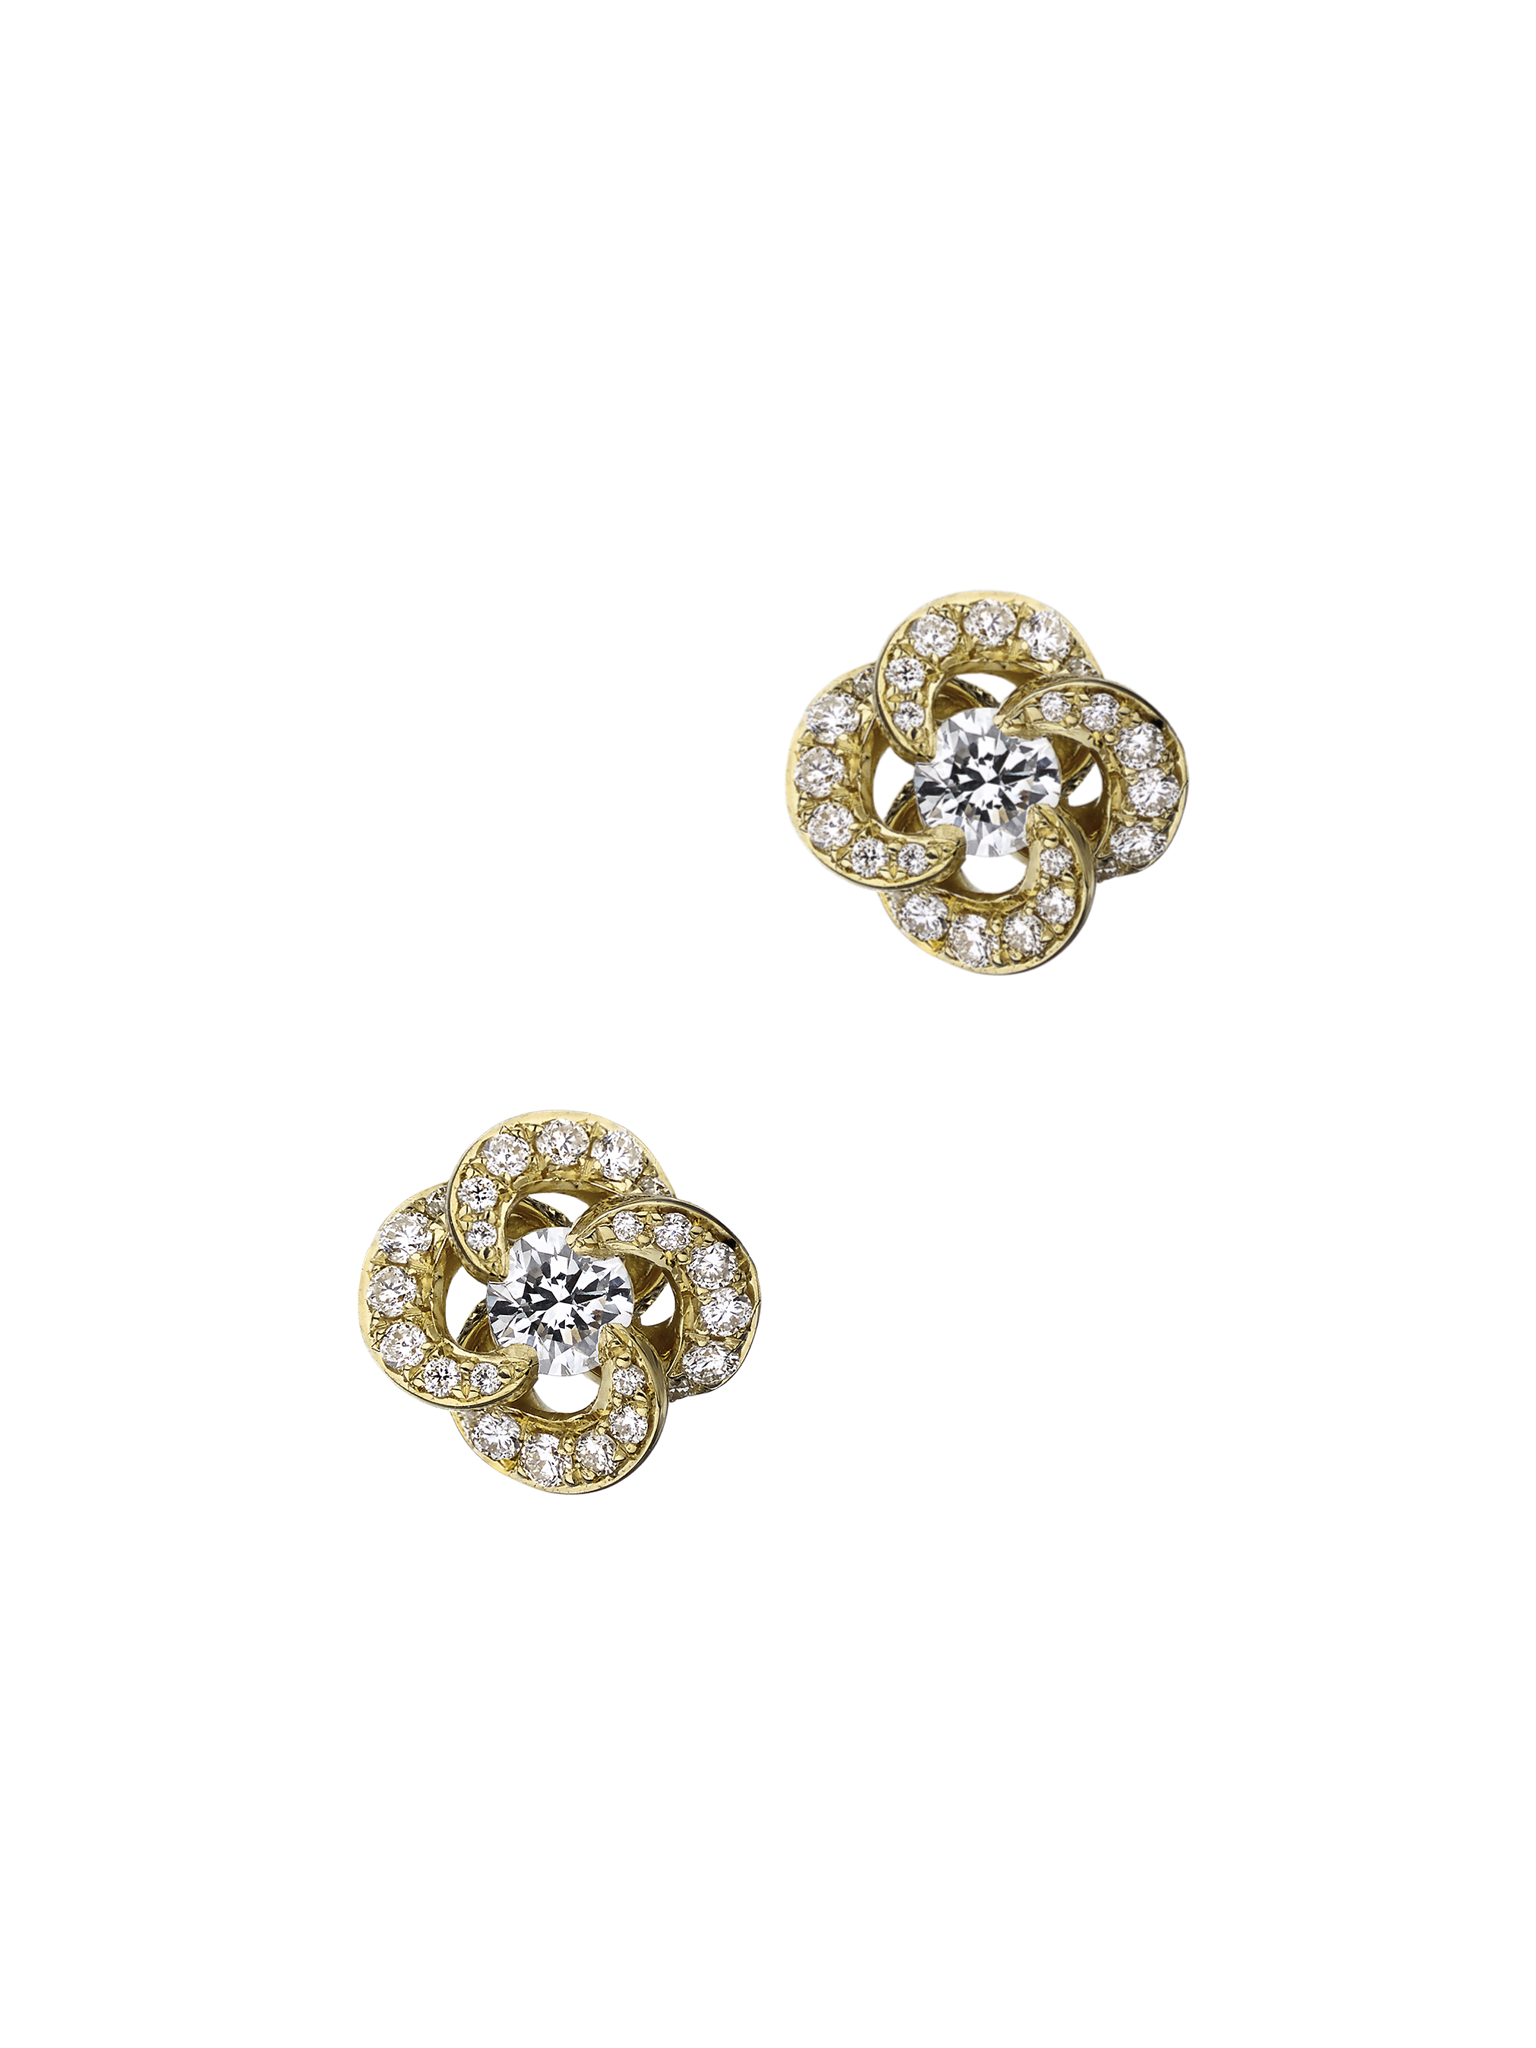 Entwined petal flower earrings - 18ct yellow gold & 0.10 diamond